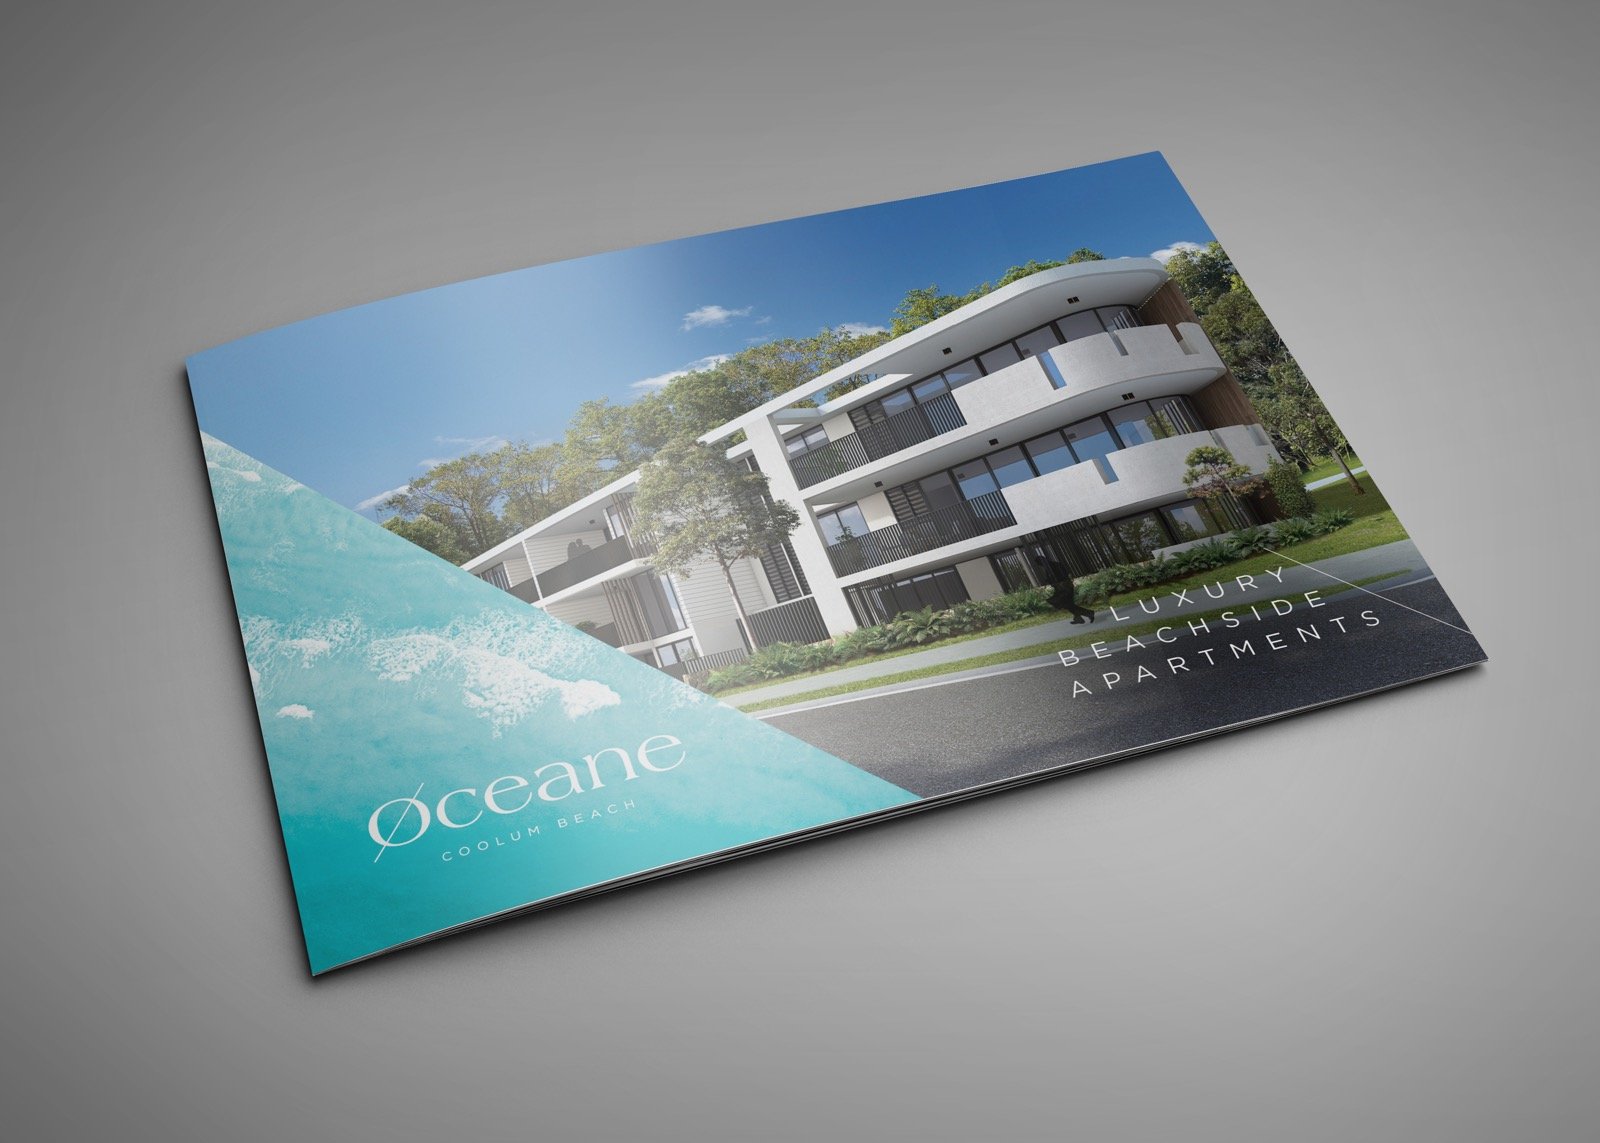 led-by-design-oceane-portfolio2-sm